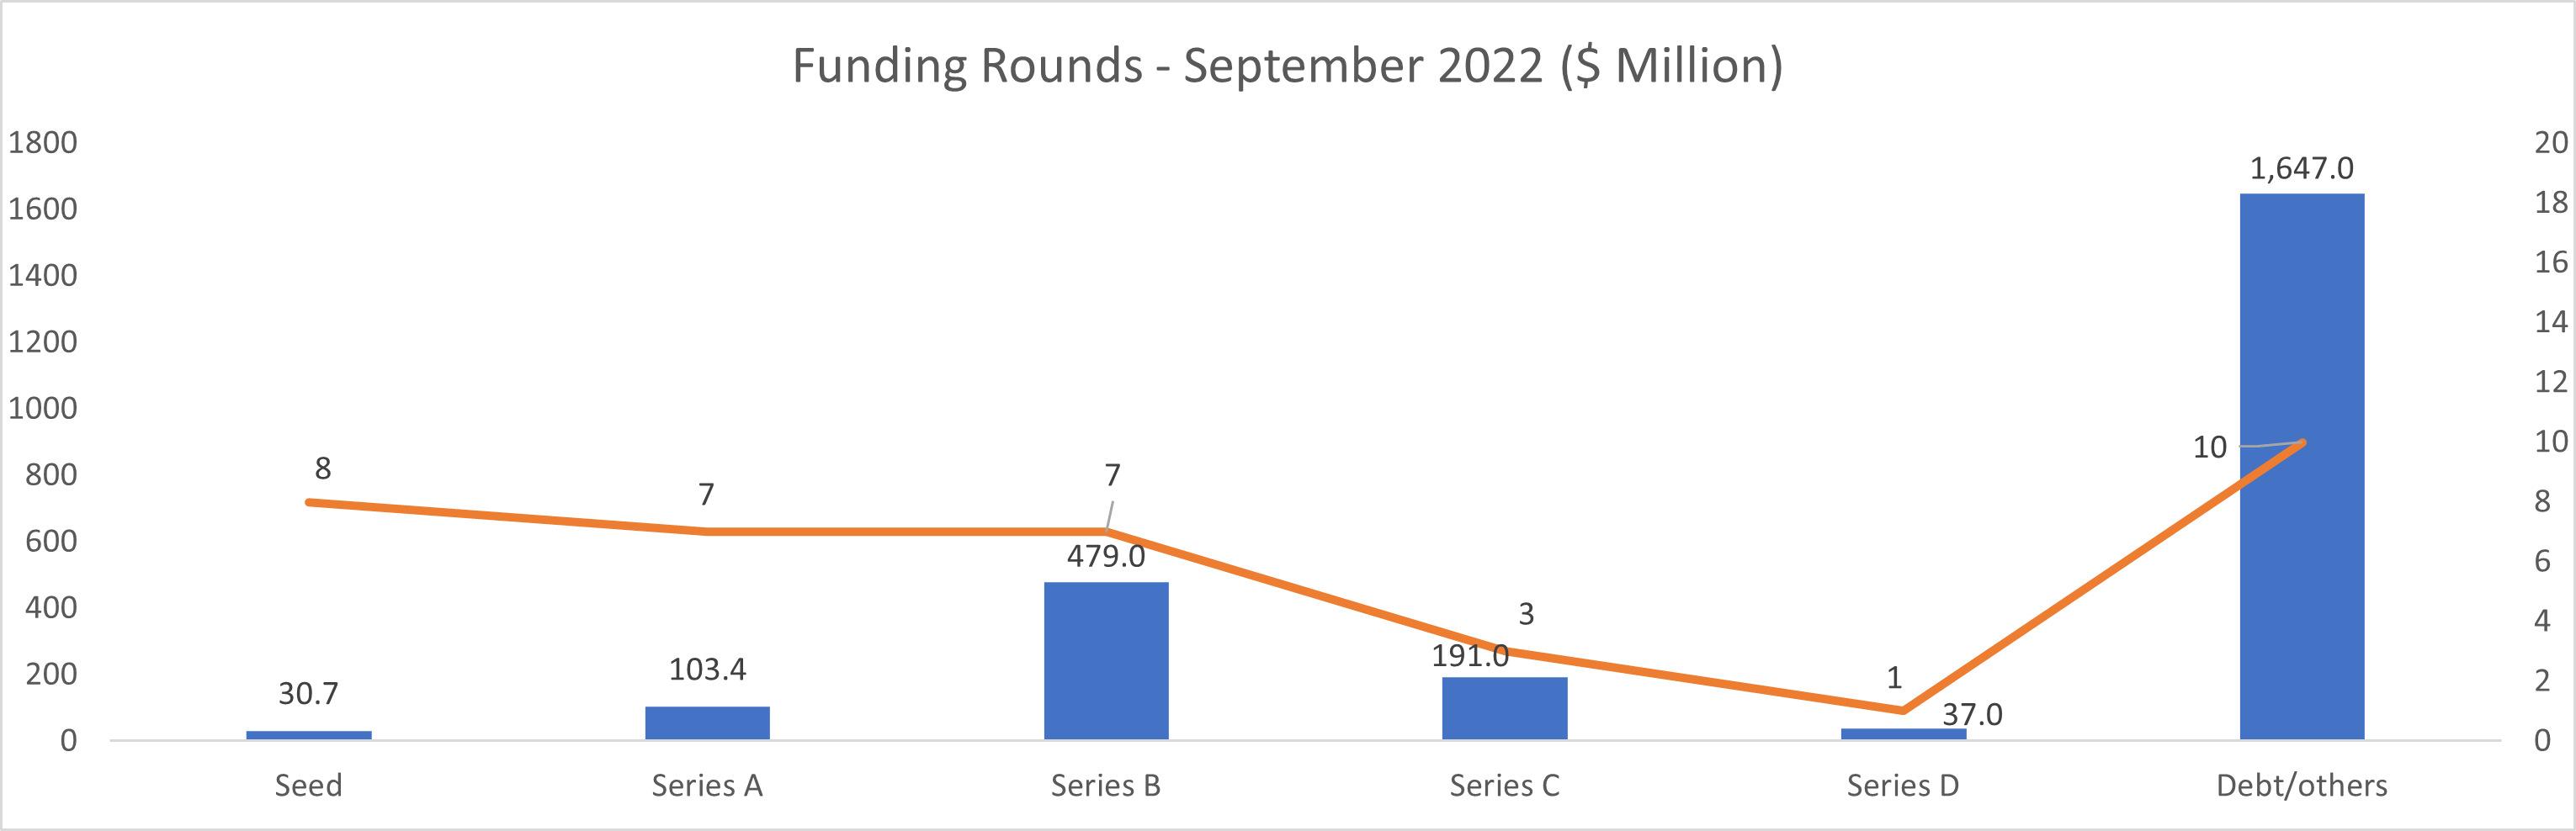 Funding rounds - September 2022